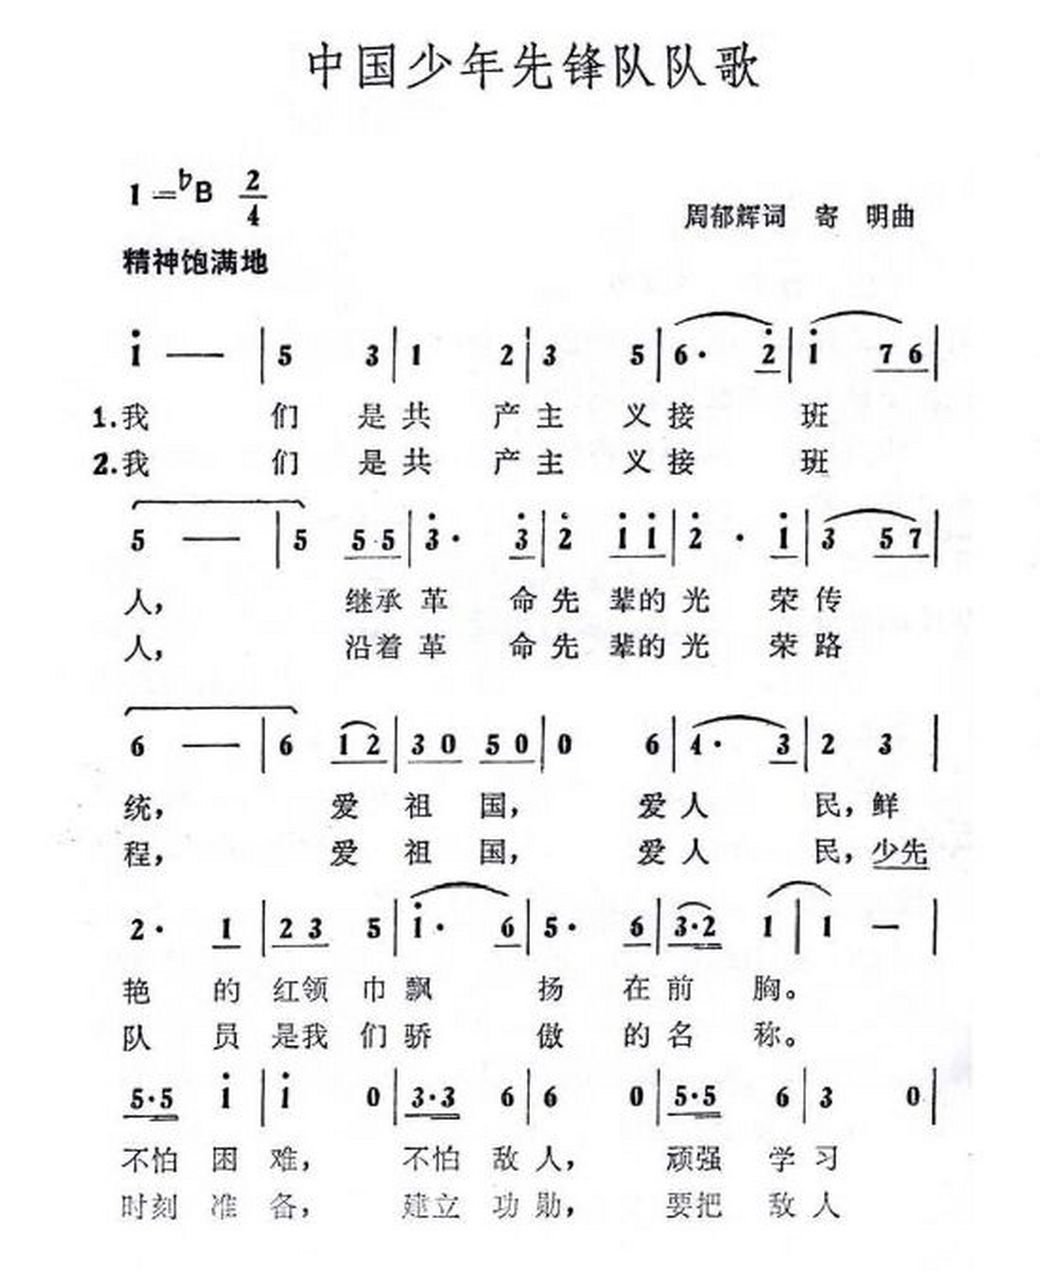 中国少先队队歌原唱版图片